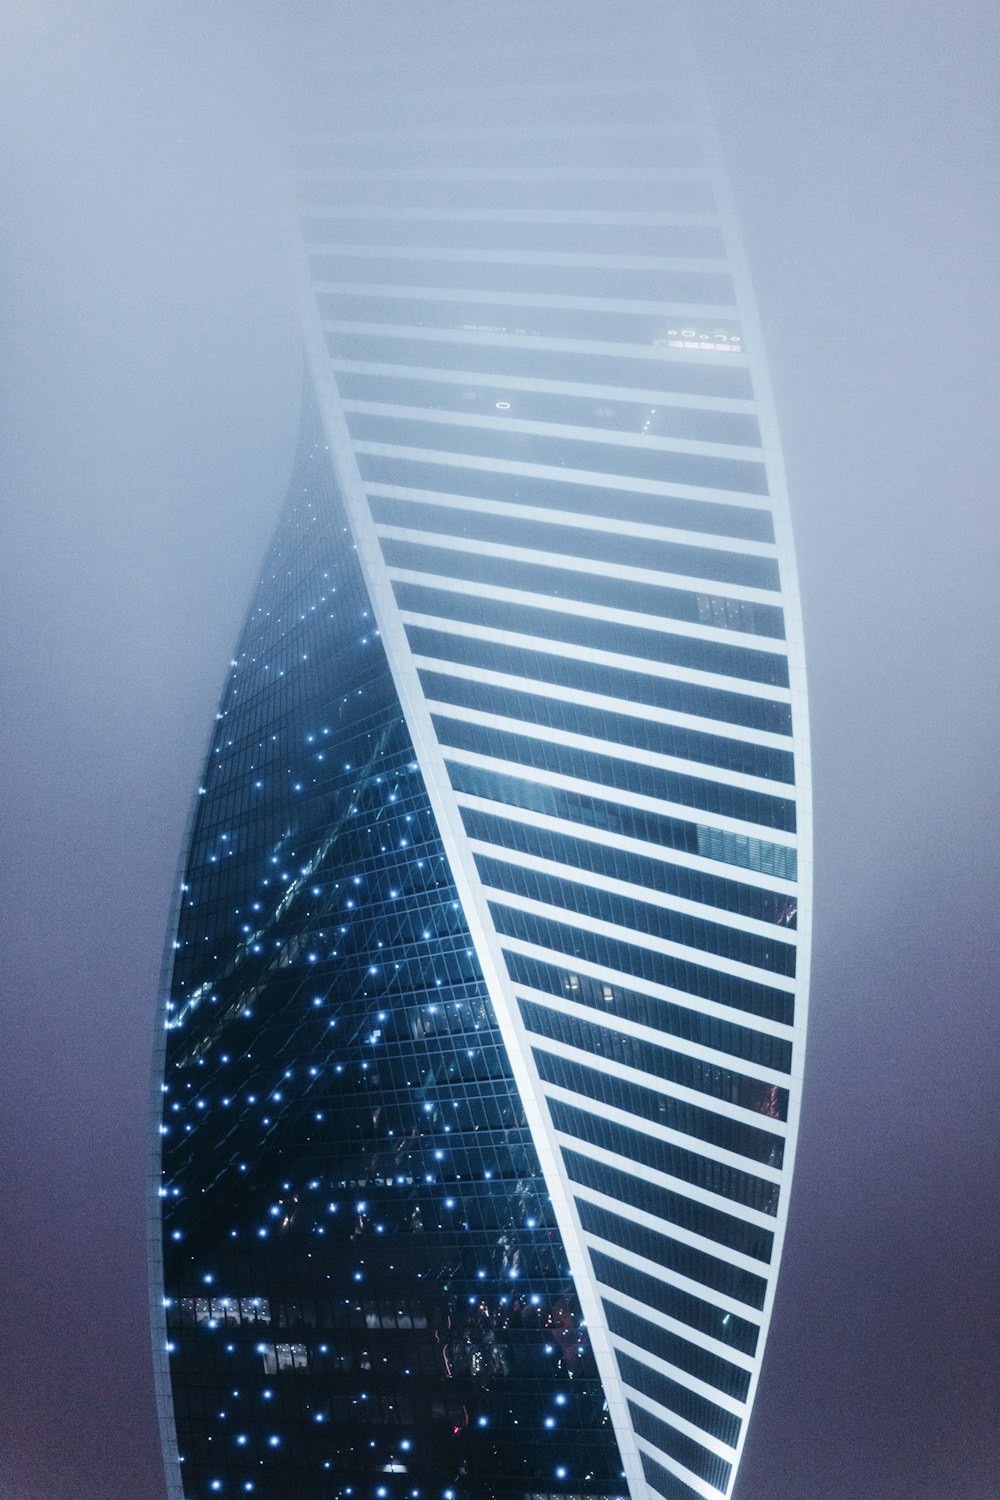 Un edificio molto alto nel mezzo di un cielo nebbioso